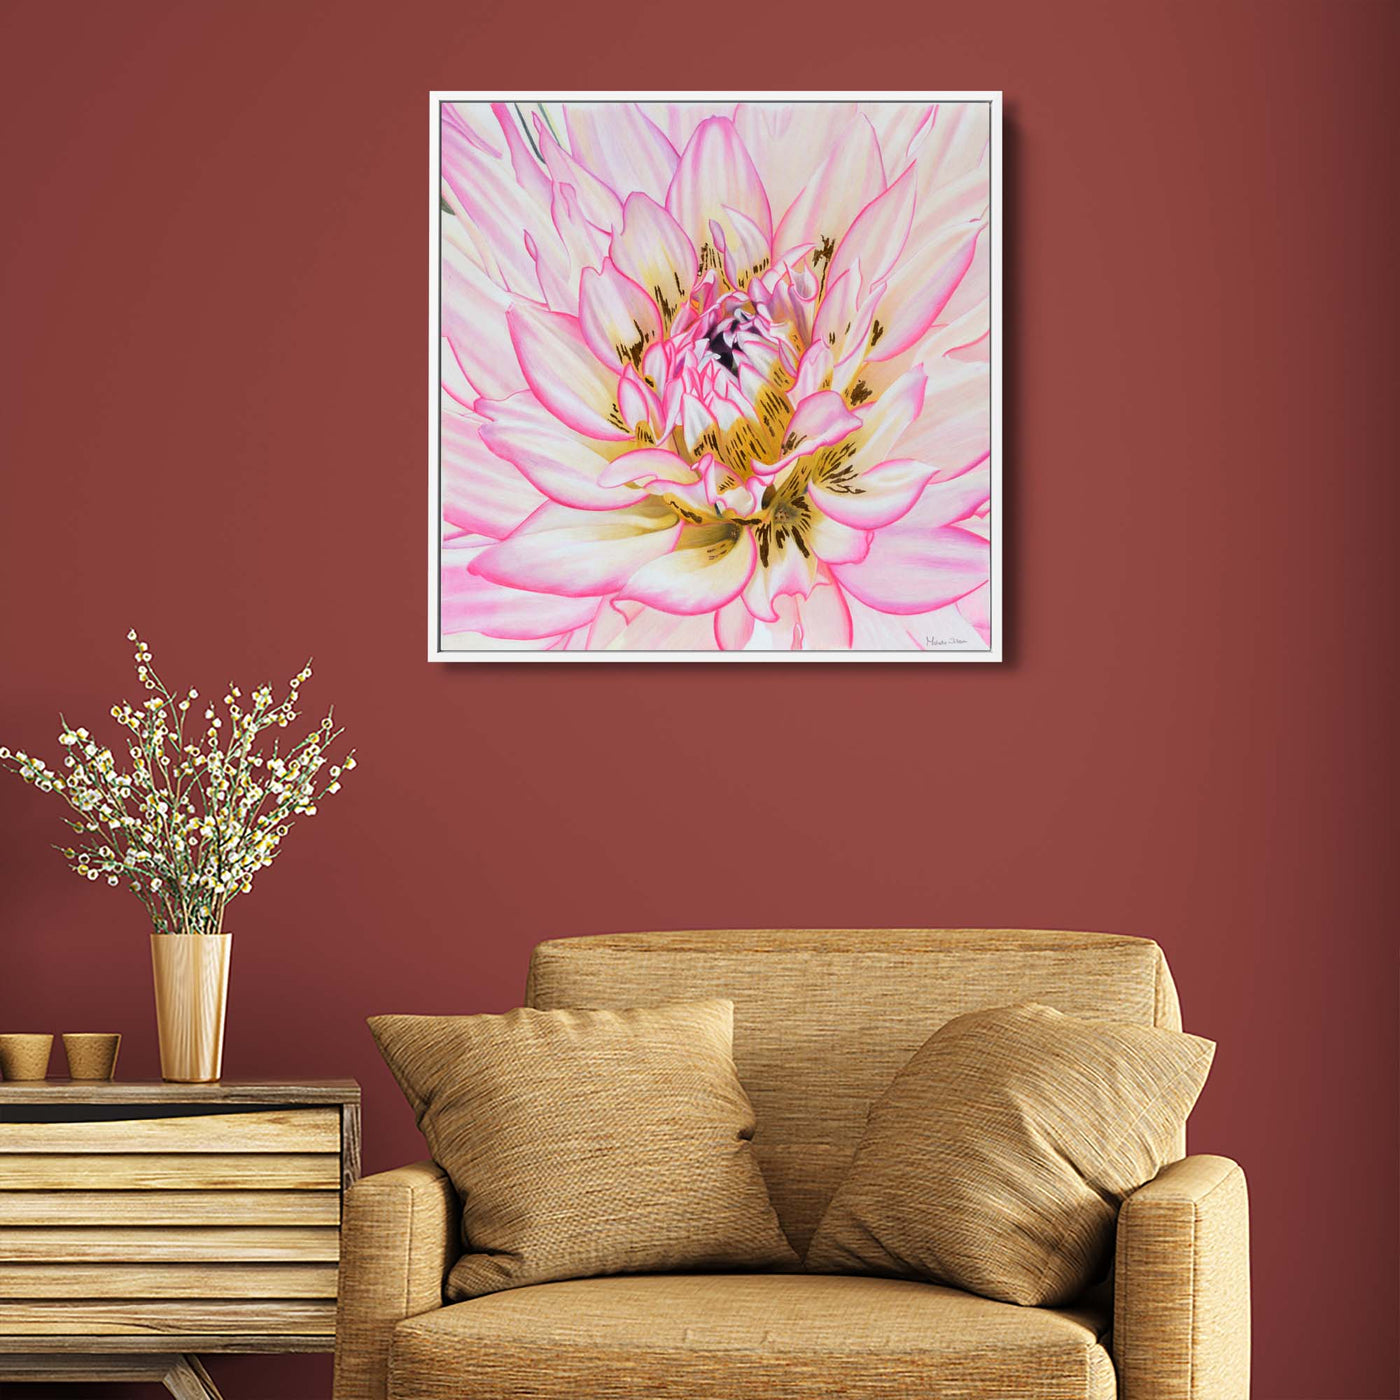 Awakening Pink Blooming Flower Canvas